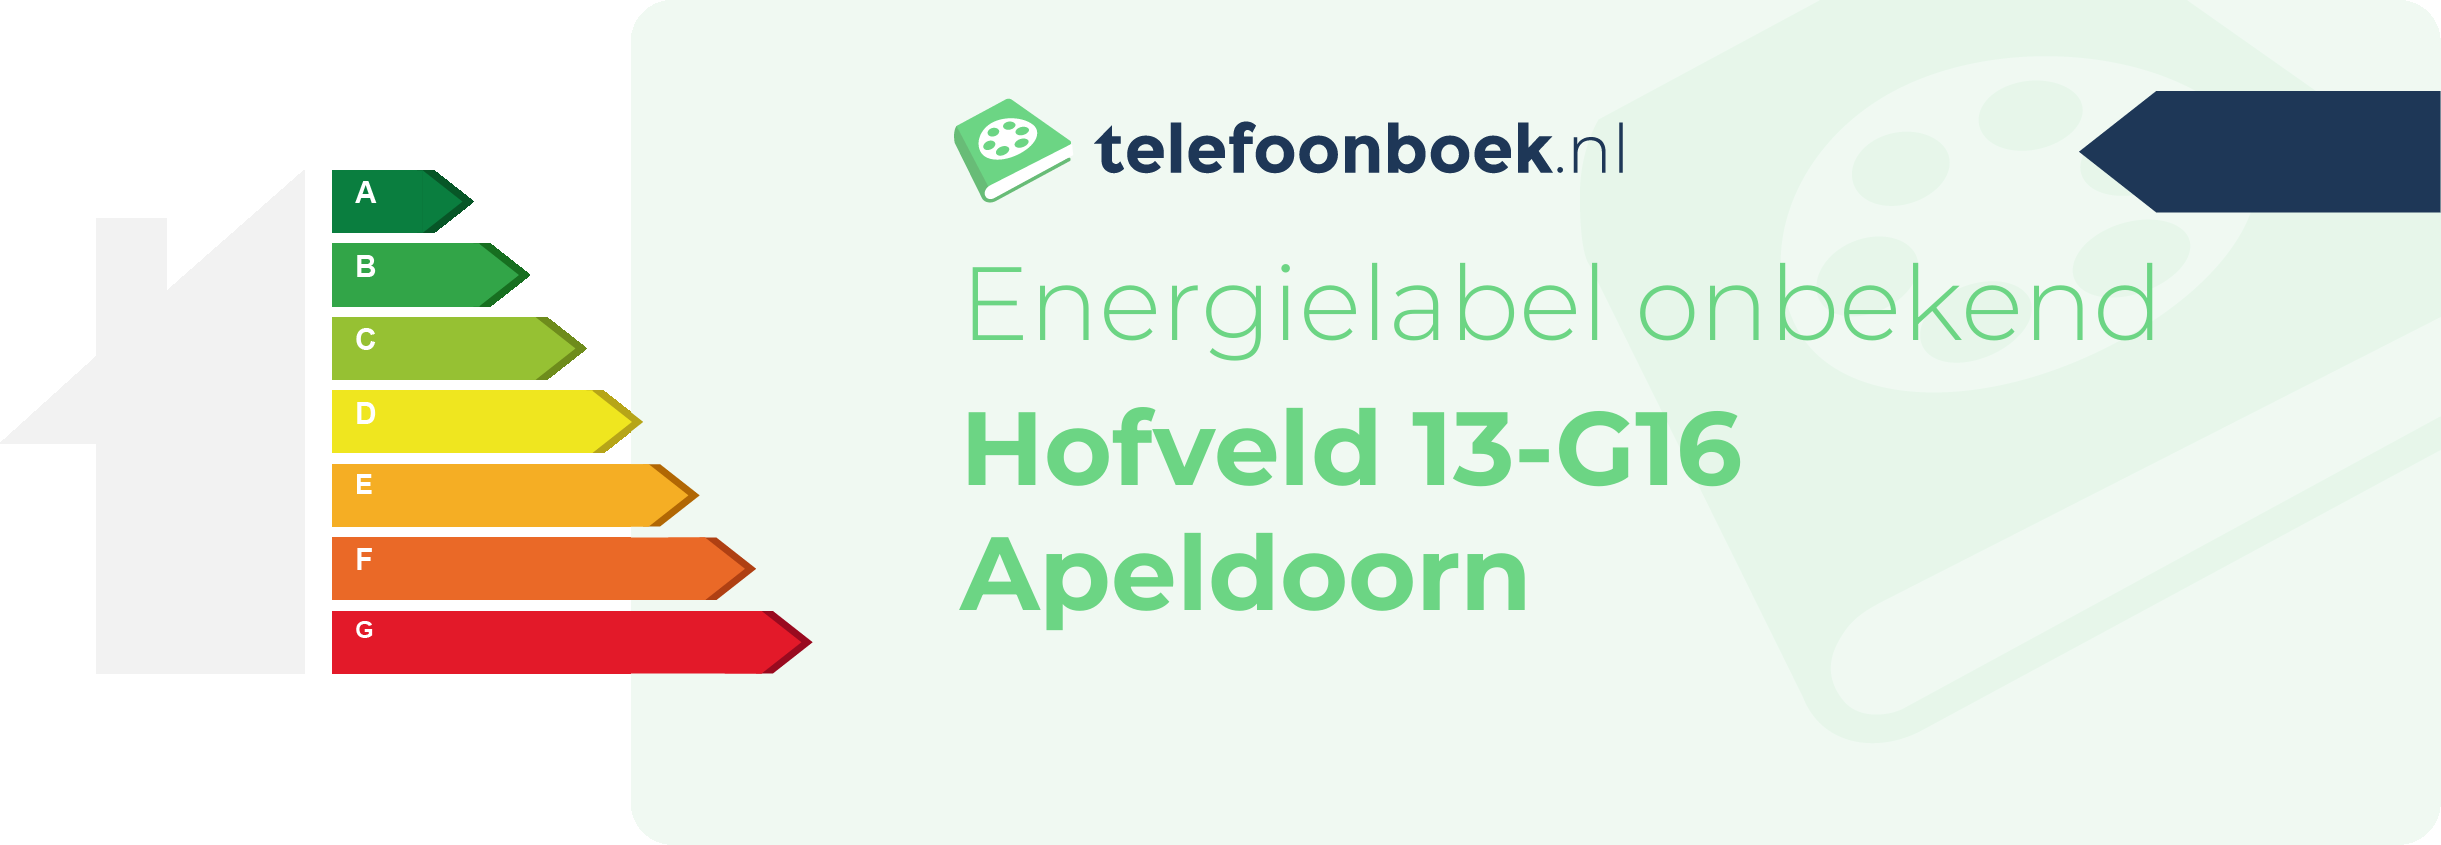 Energielabel Hofveld 13-G16 Apeldoorn